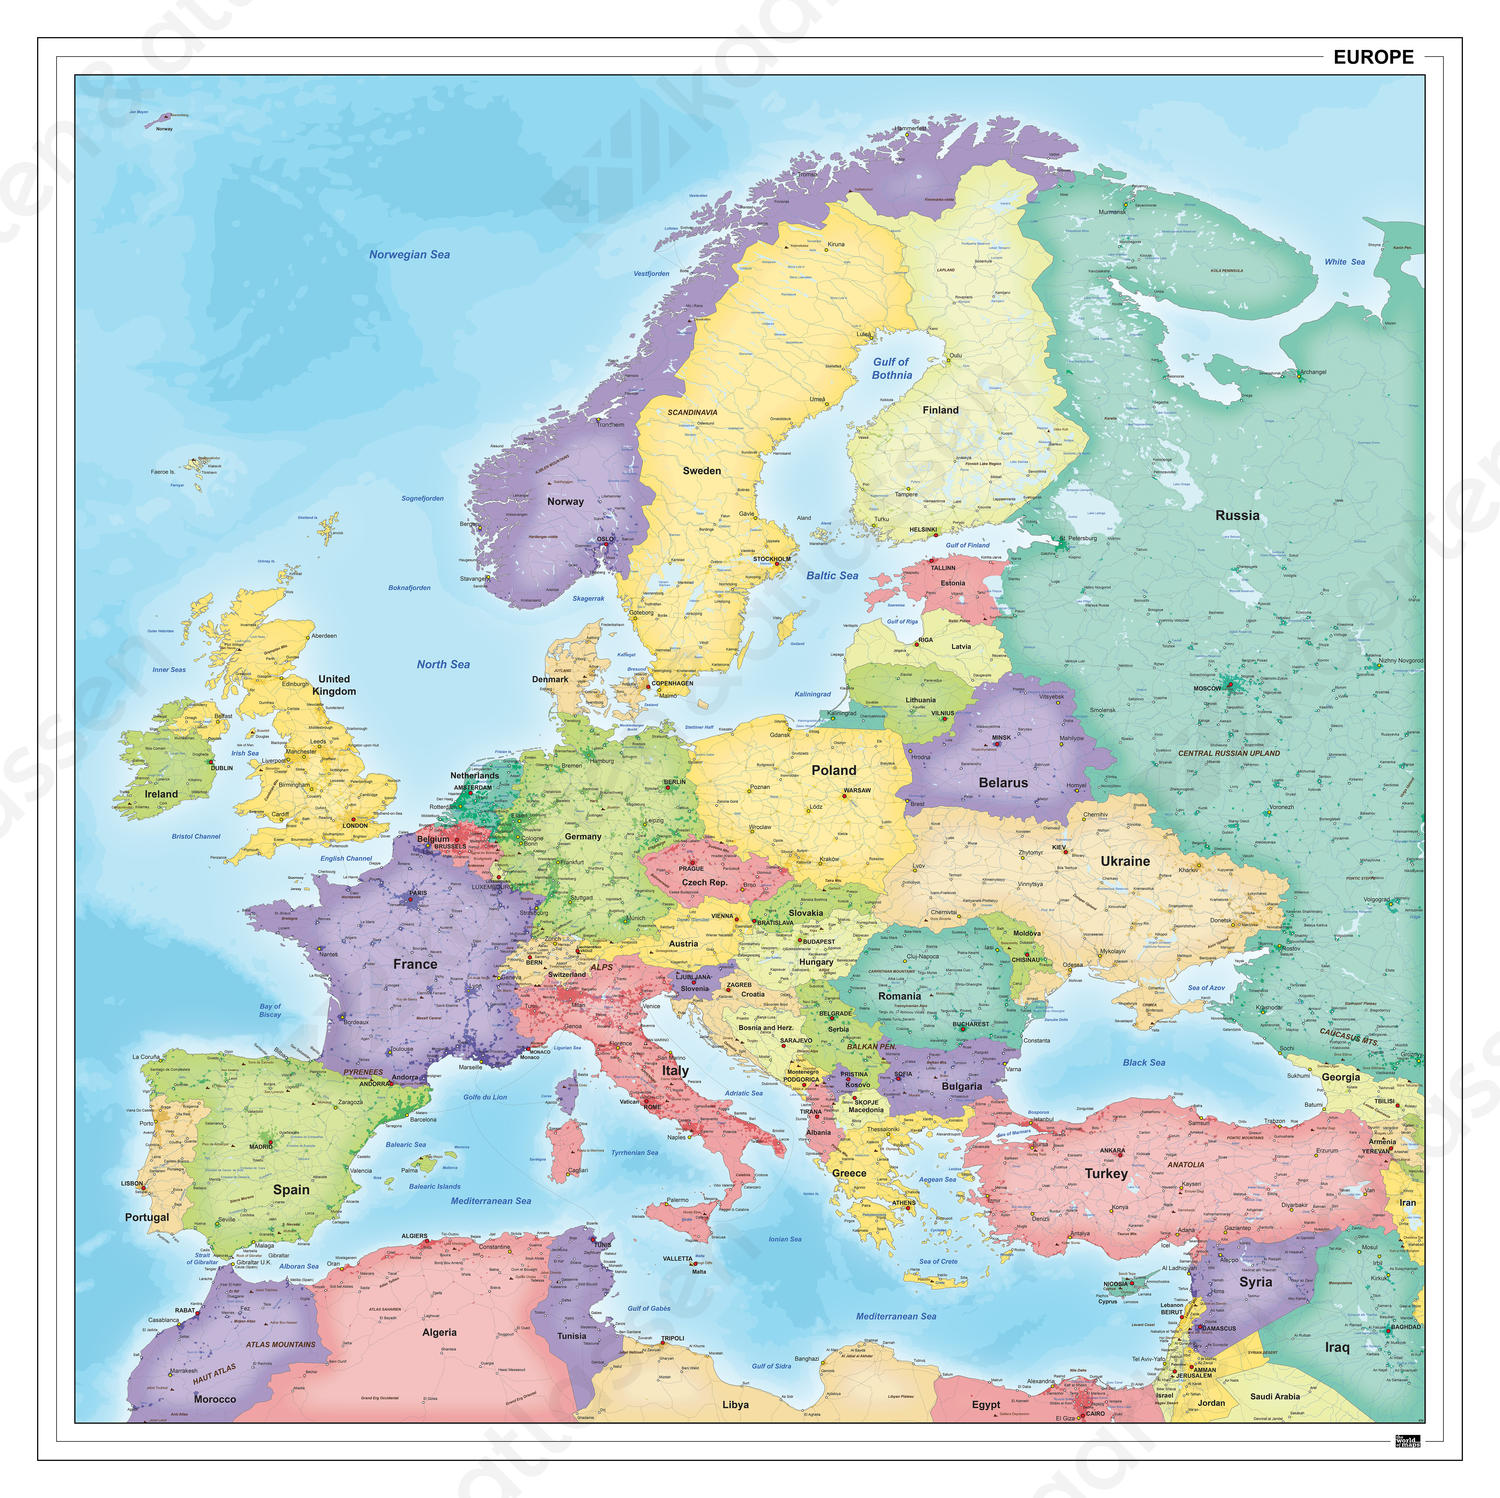  Europakaart staatkundig